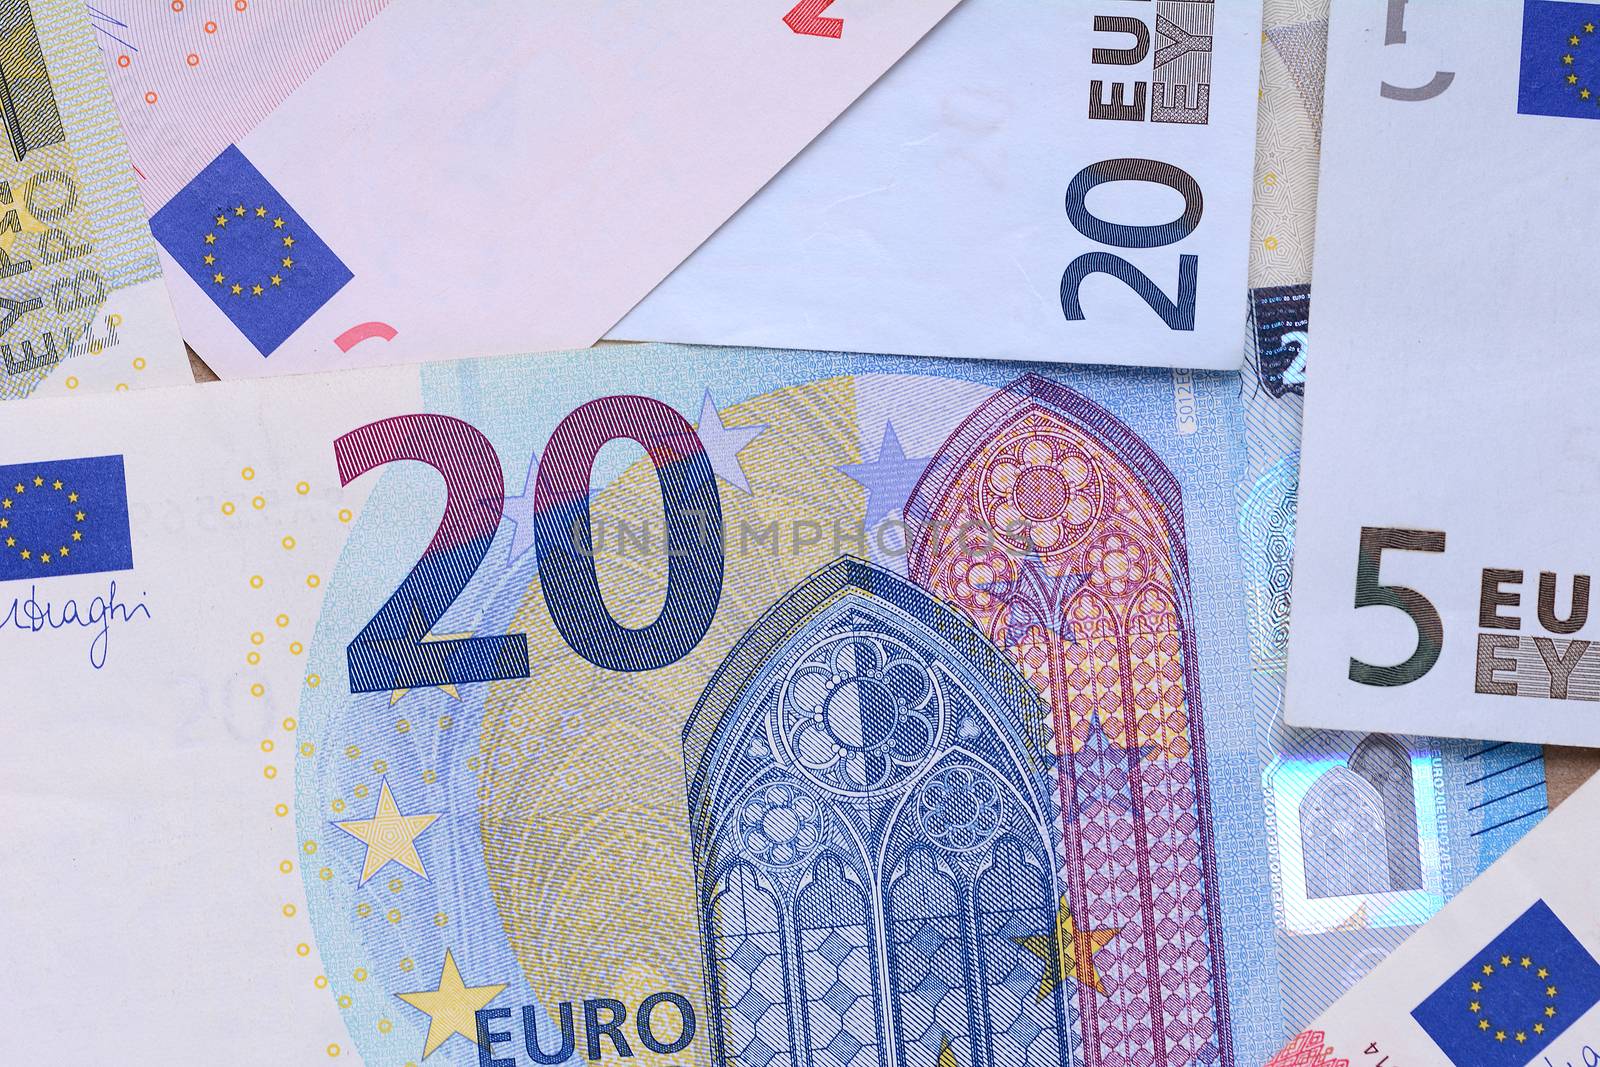 Several euro banknotes. European money concept. Close up